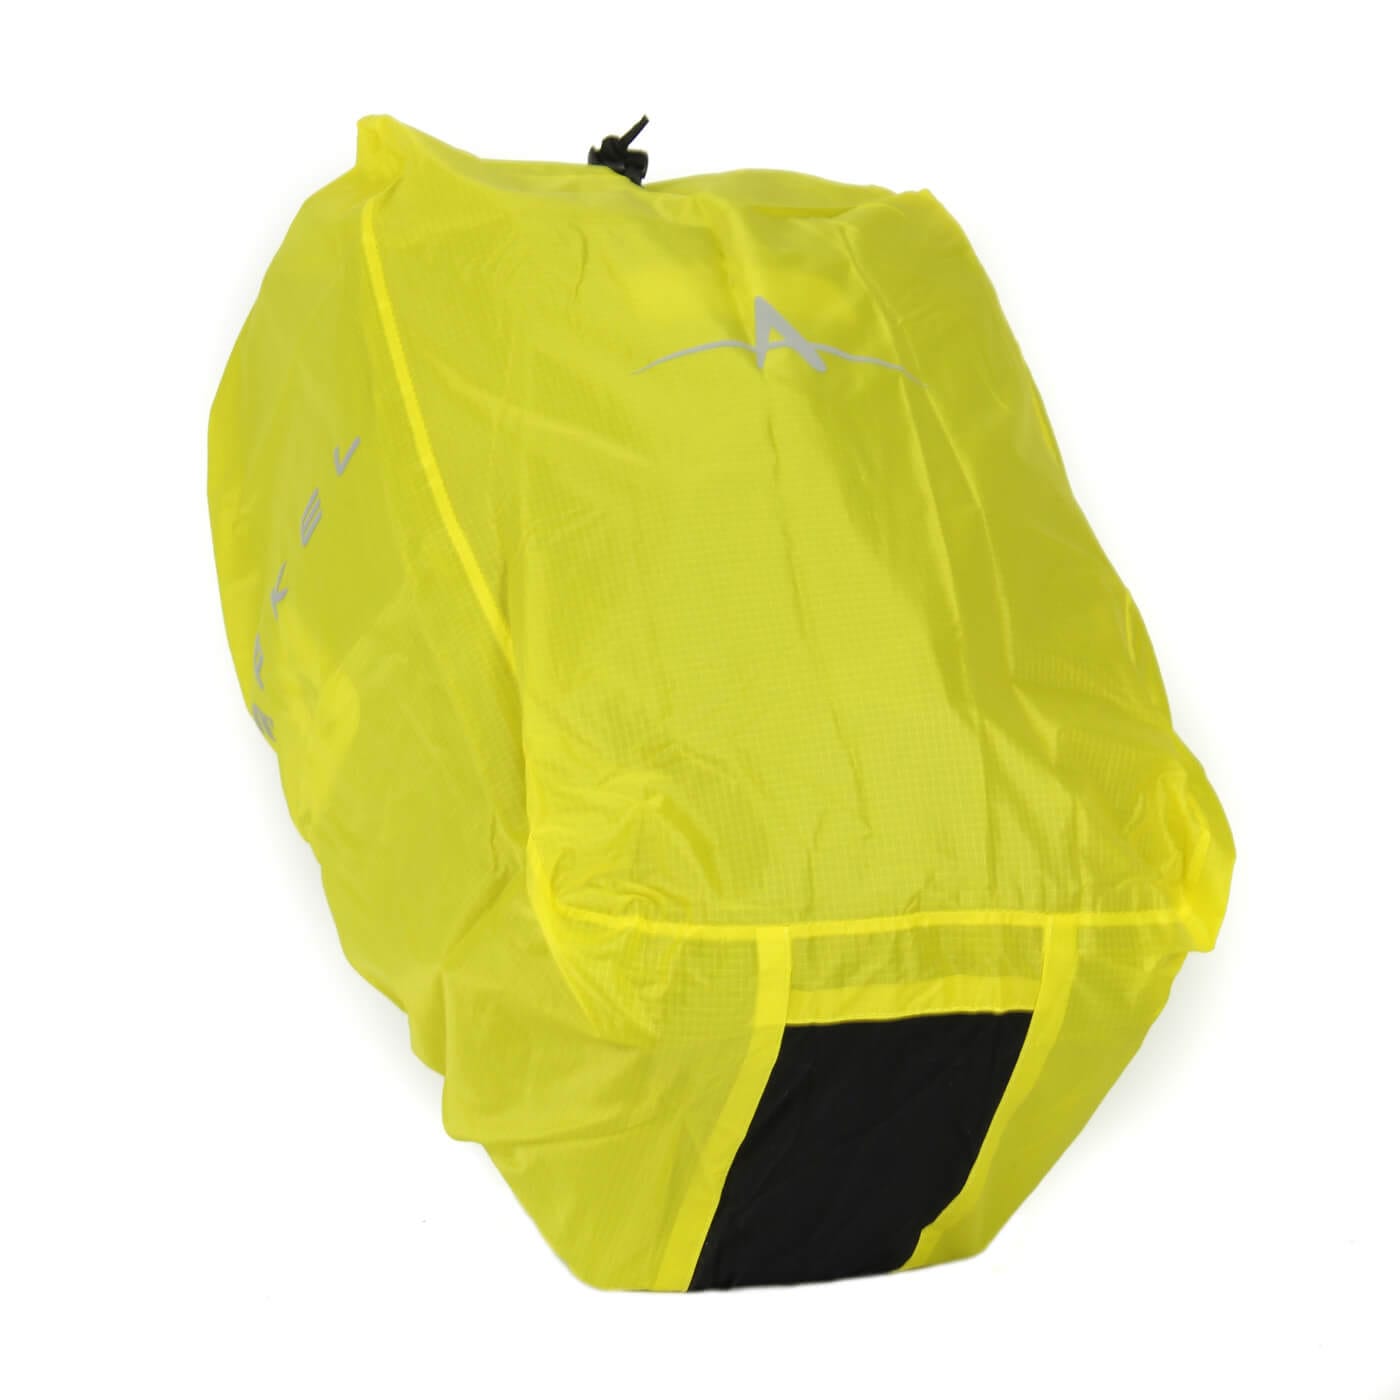 Arkel Bike Bags Waterproof Rain Covers